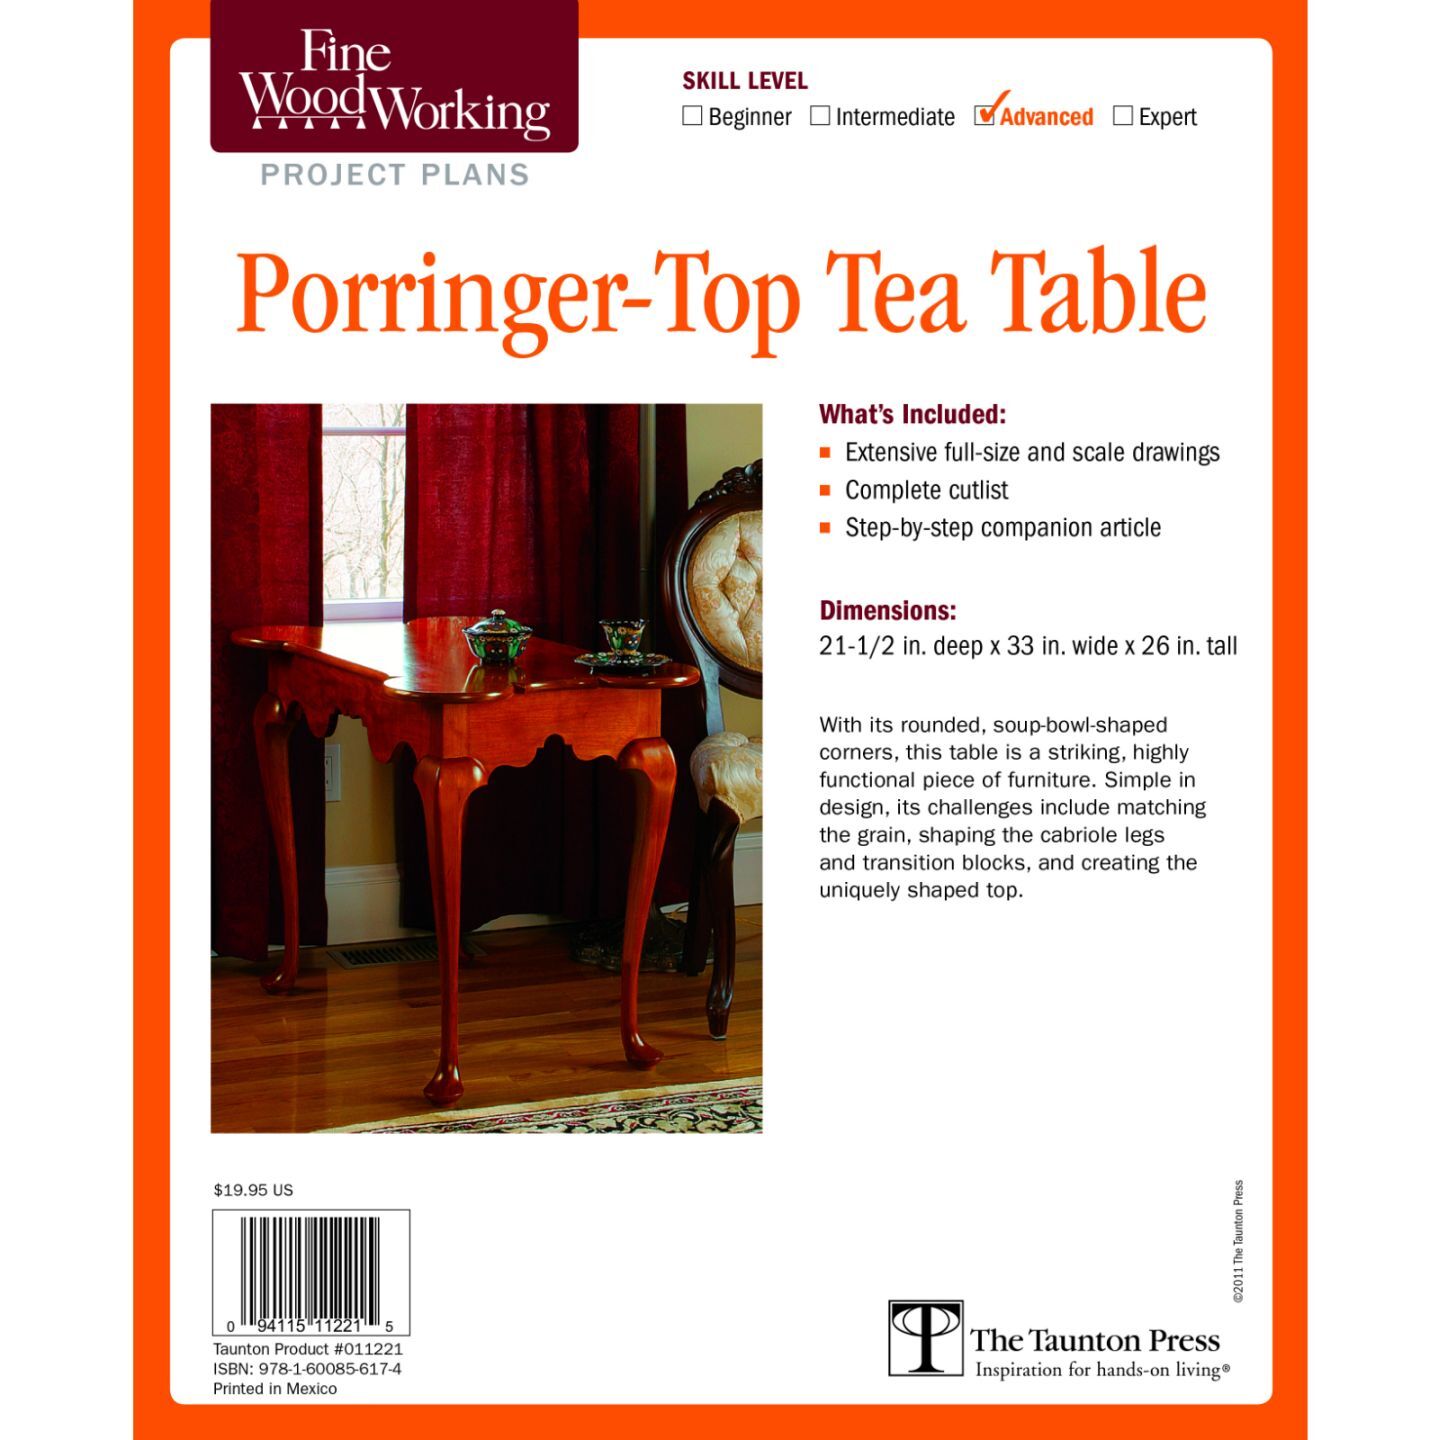 Porringer-Top Tea Table Plan